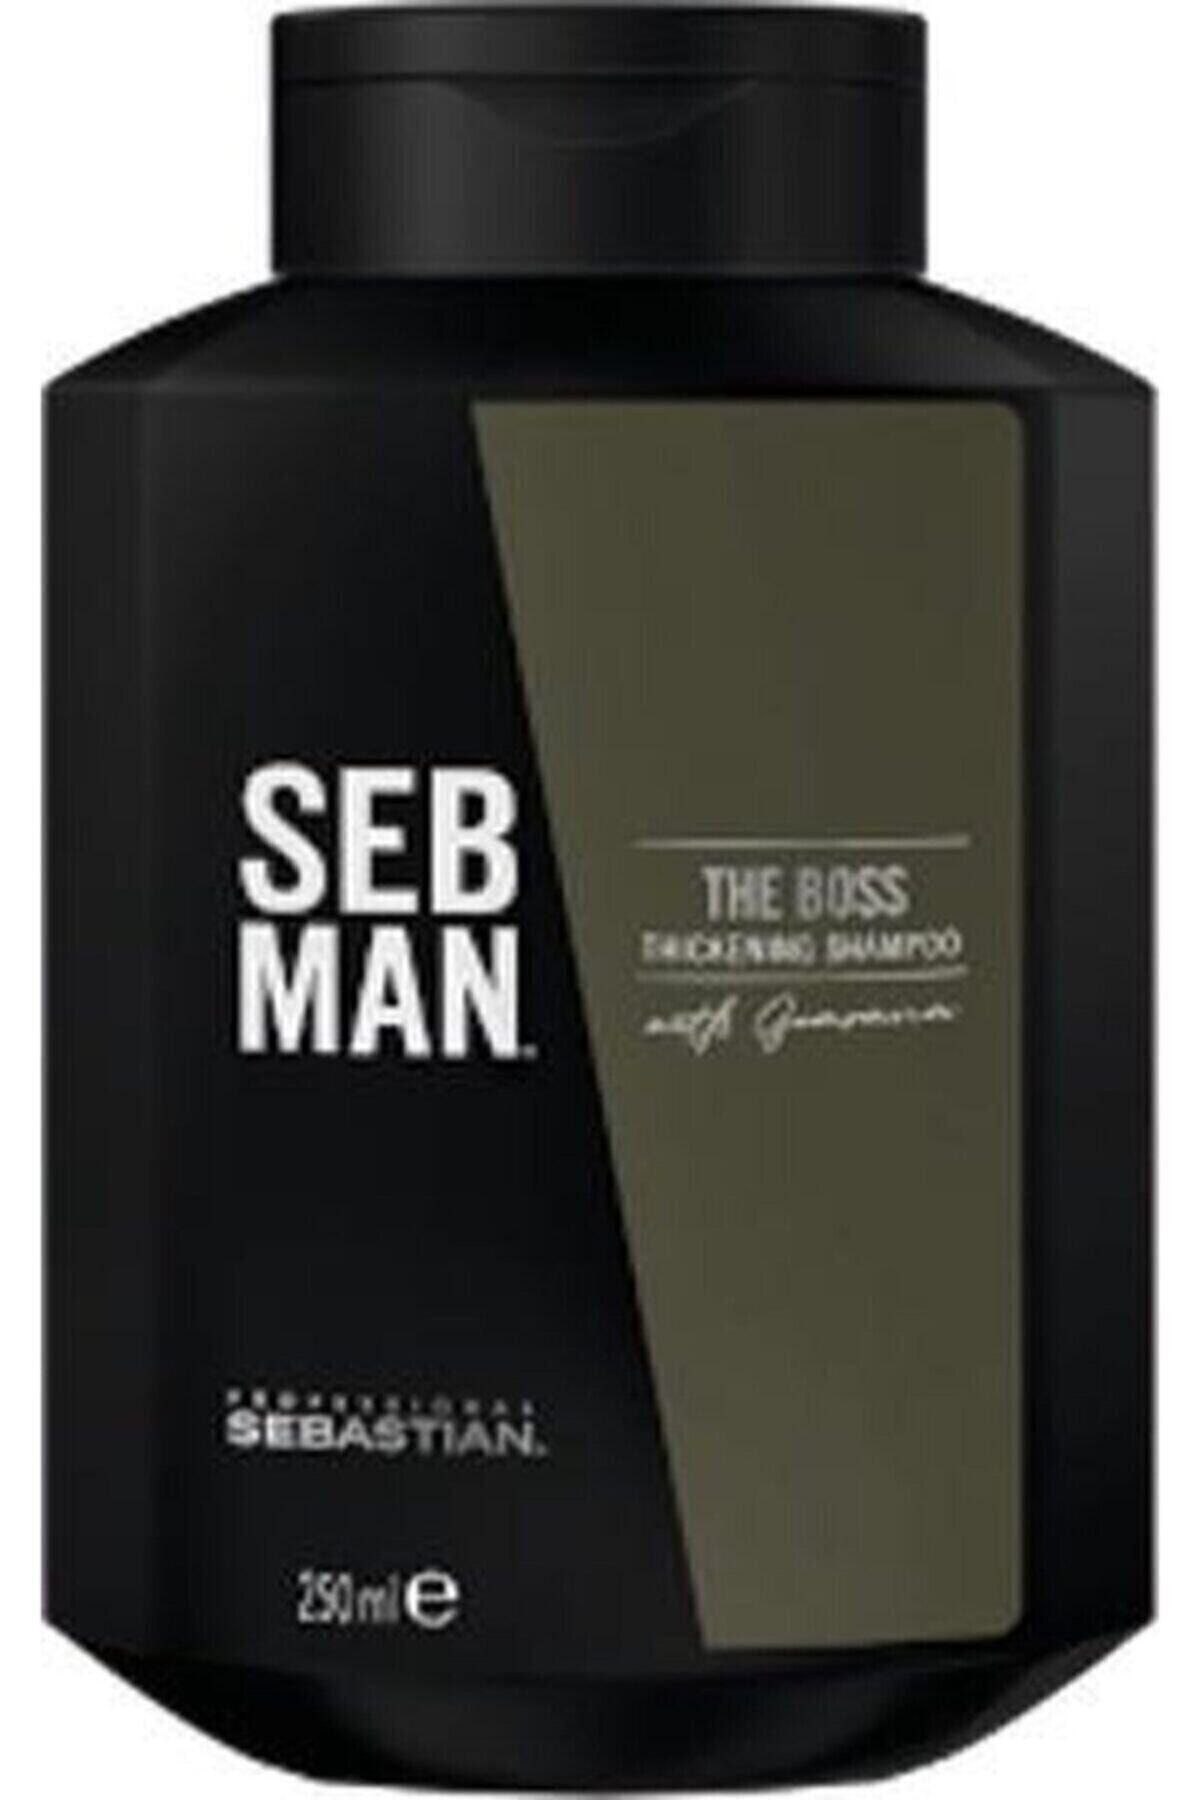 Sebastian Seb Man The Boss Ince Telli Saçları Kalınlaştıran Bakım Şampuanı 250.ml